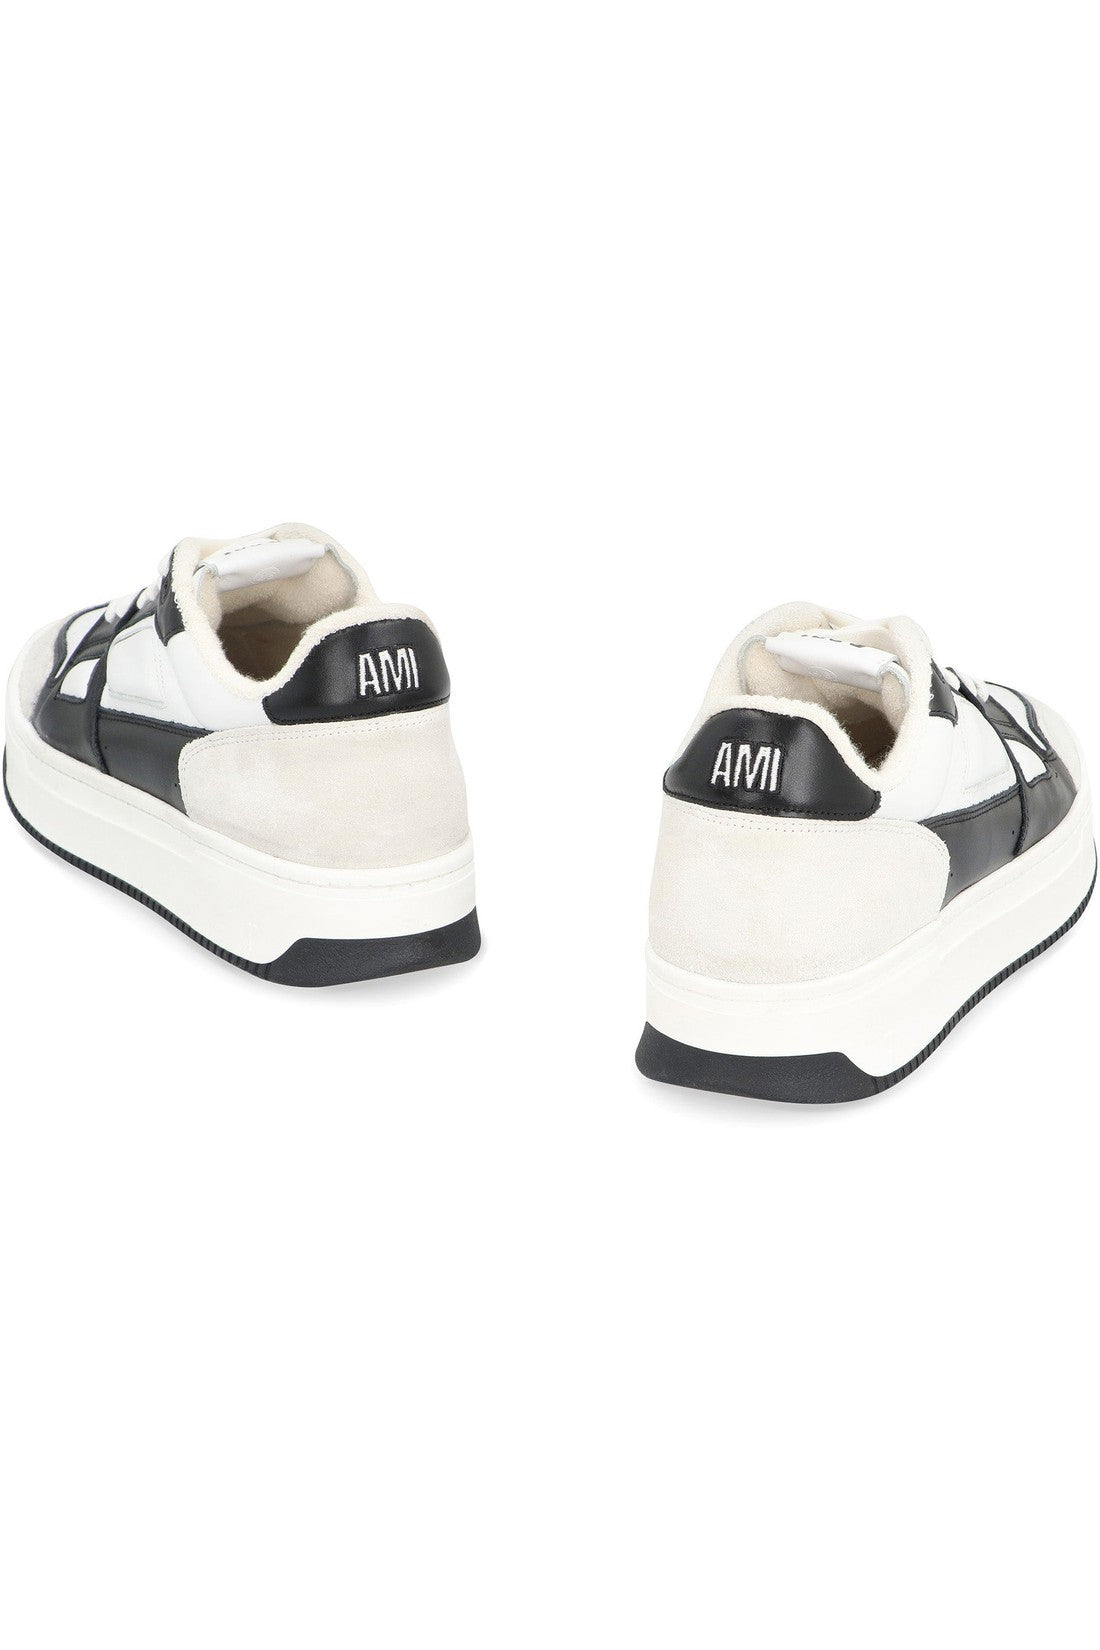 AMI PARIS-OUTLET-SALE-Arcade low-top sneakers-ARCHIVIST